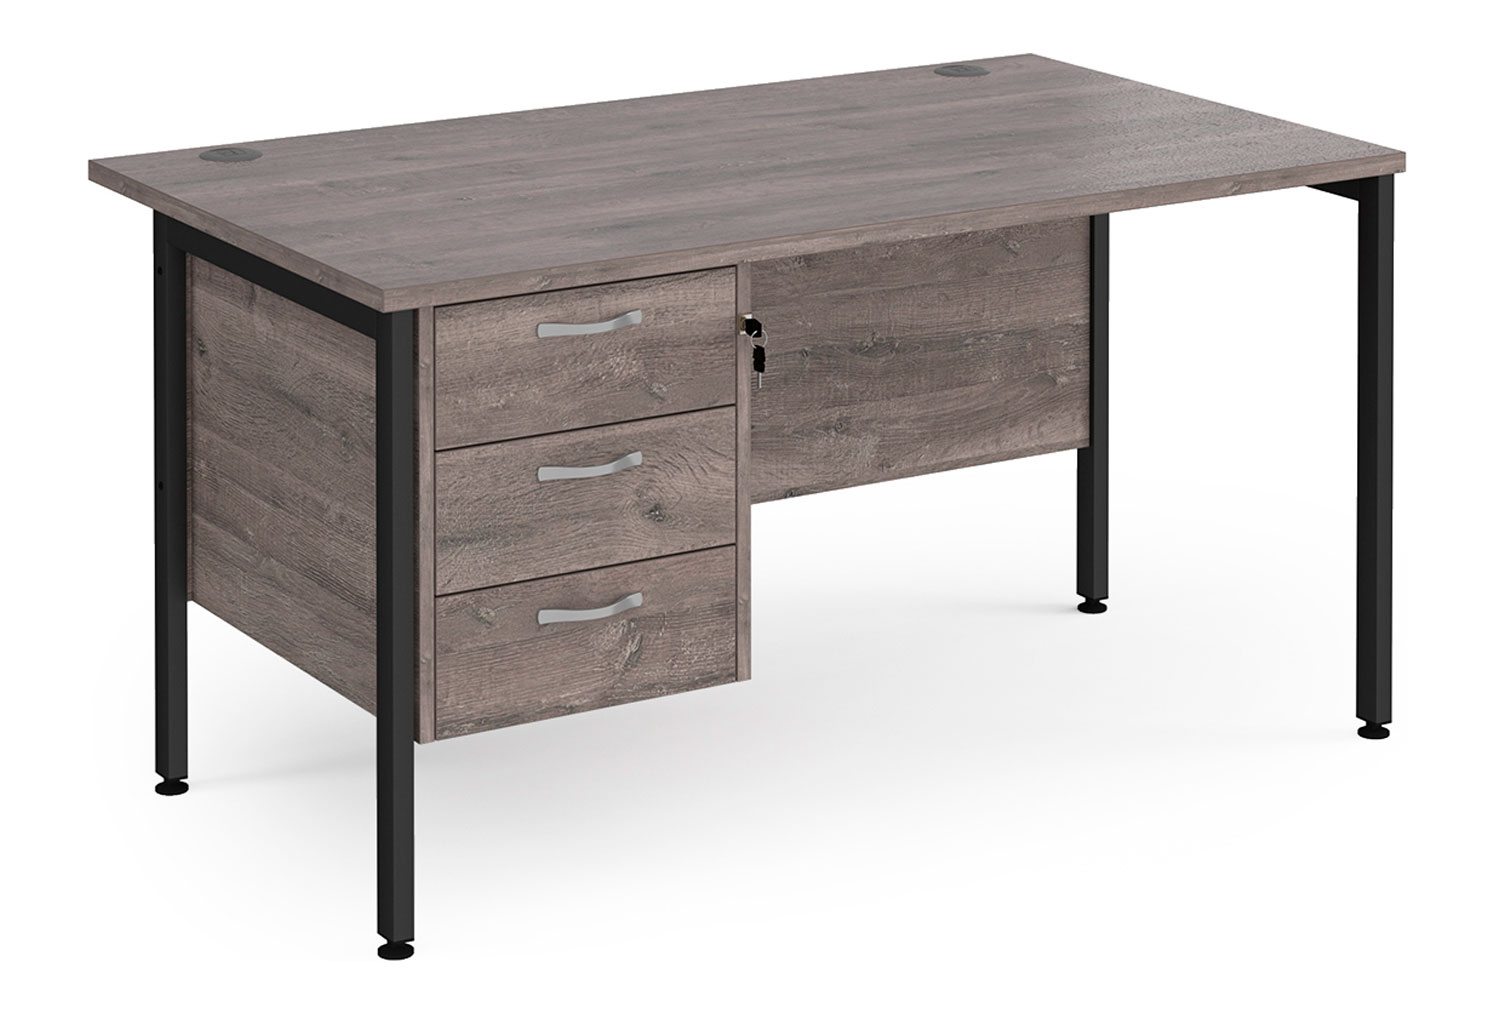 Value Line Deluxe H-Leg Rectangular Office Desk 3 Drawers (Black Legs), 140wx80dx73h (cm), Grey Oak